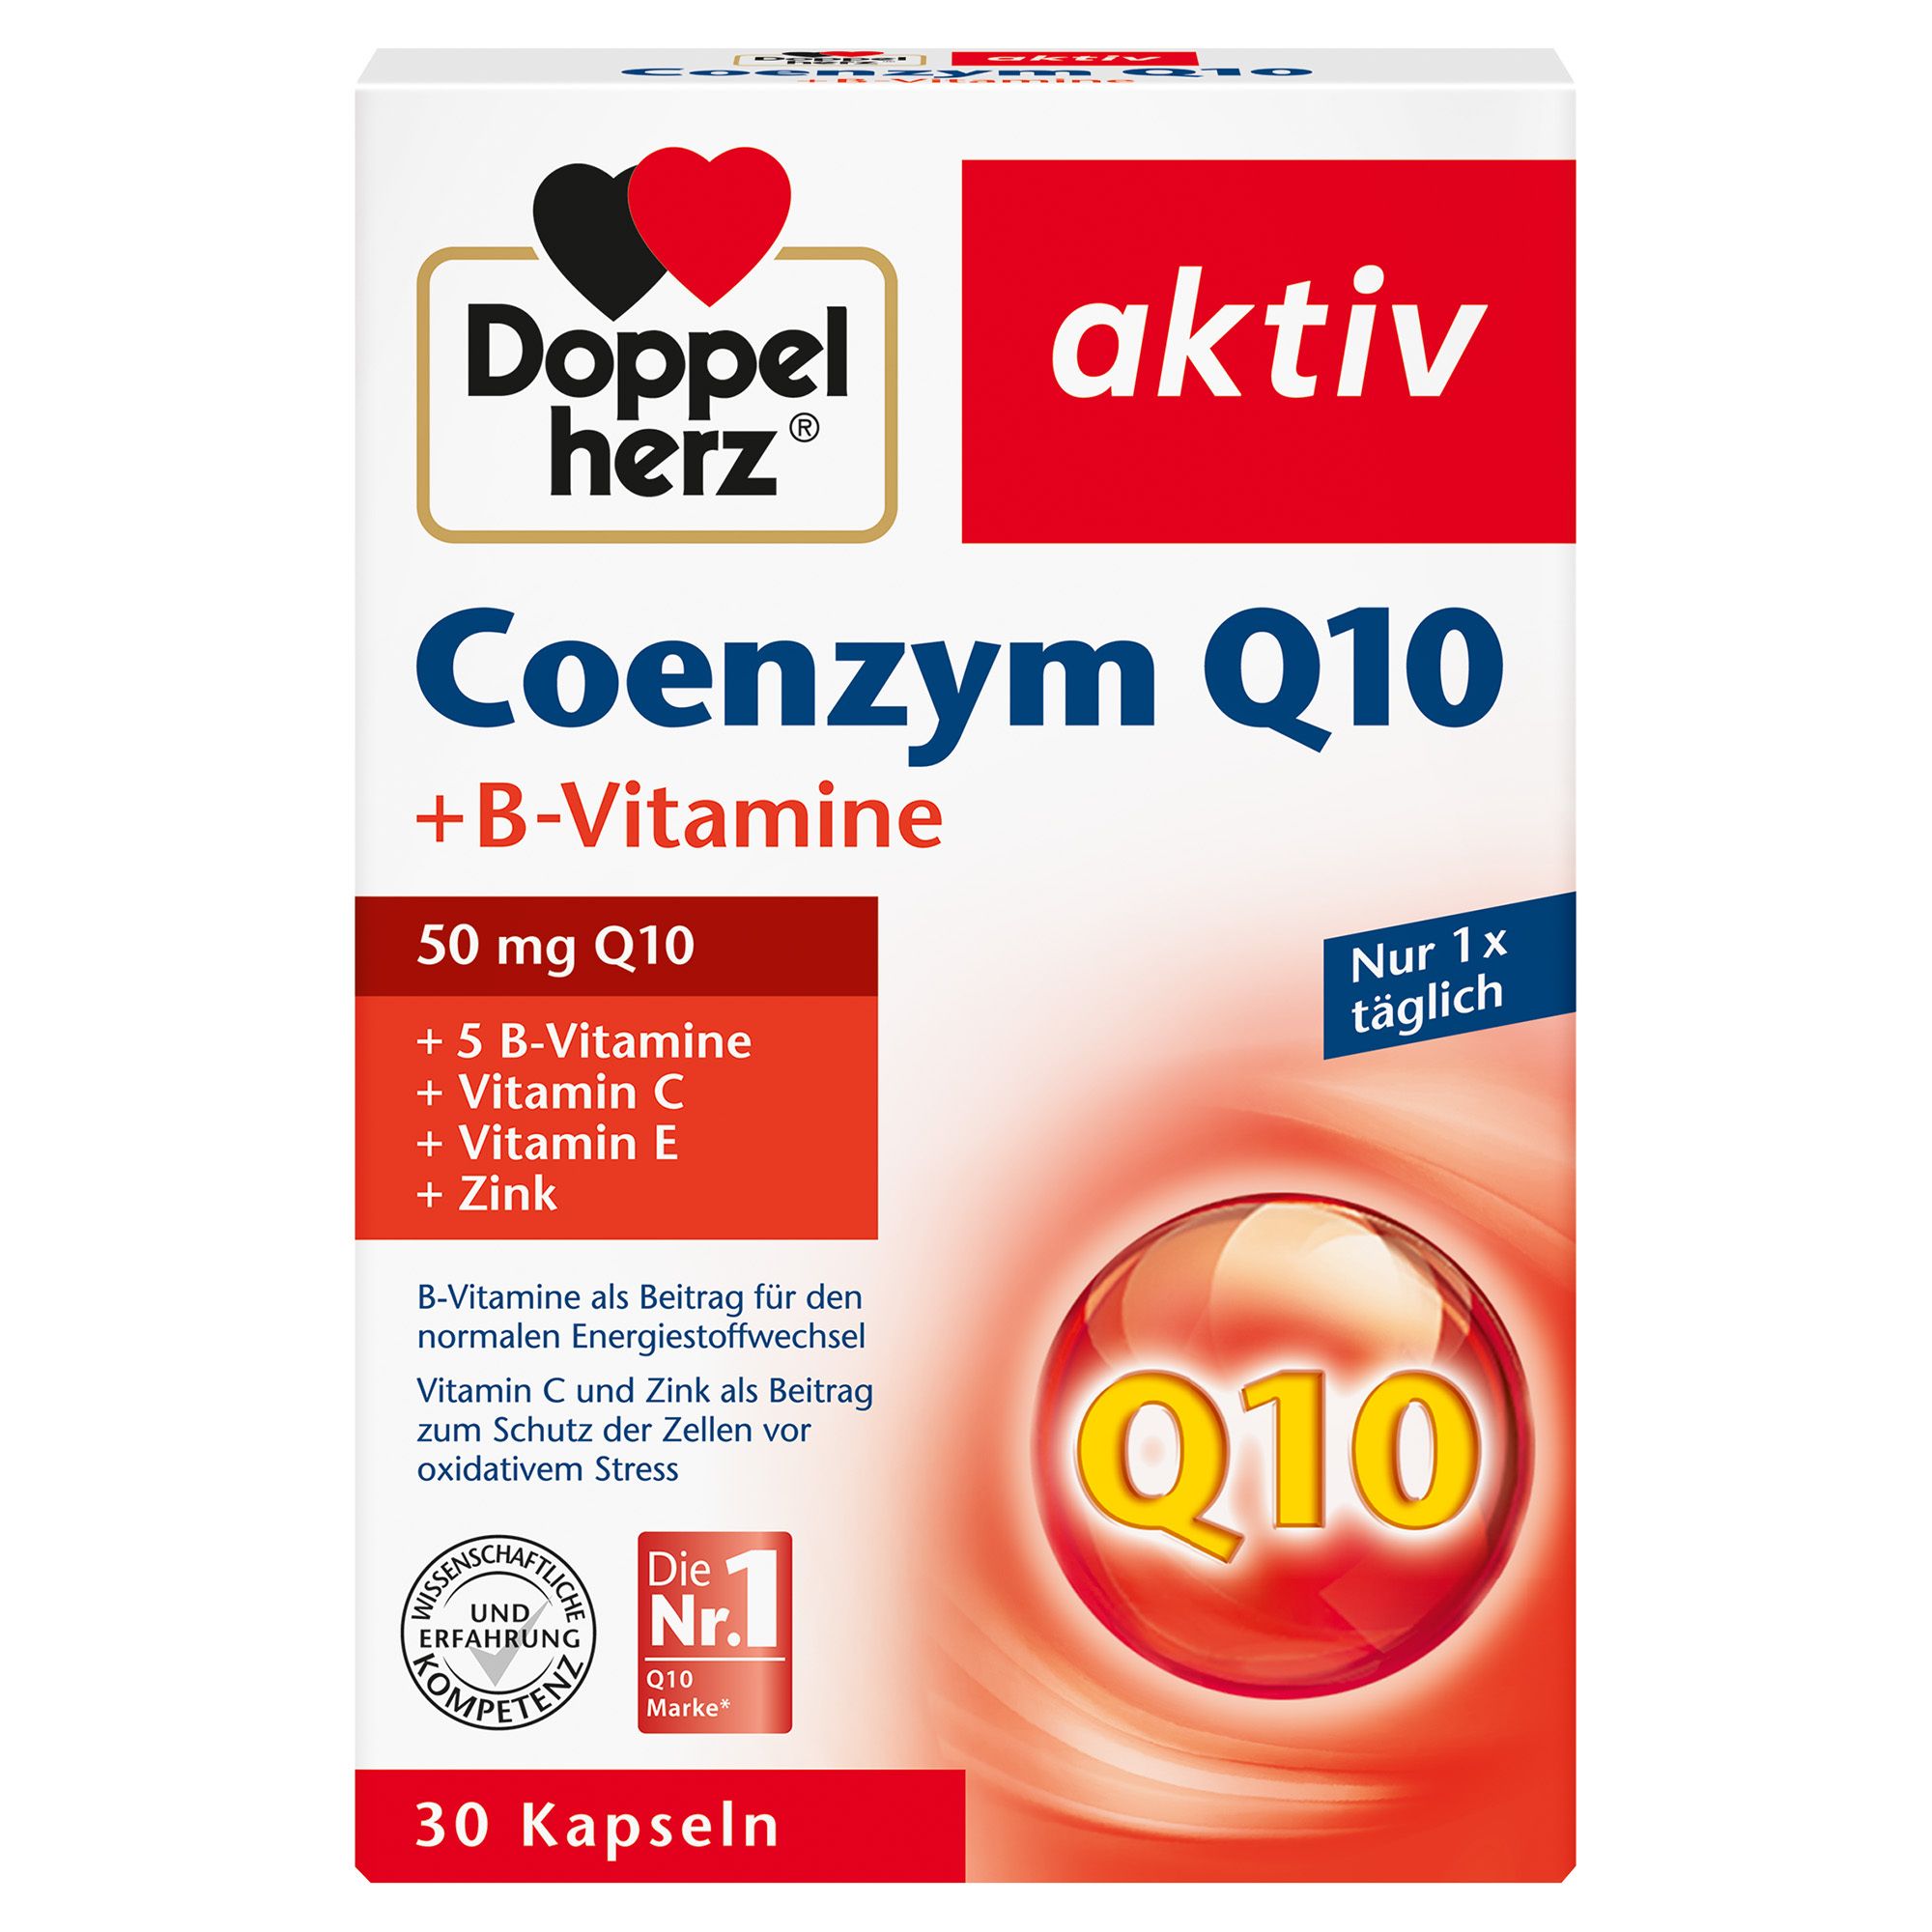 Doppelherz® aktiv Coenzym Q10 + B-Vitamine